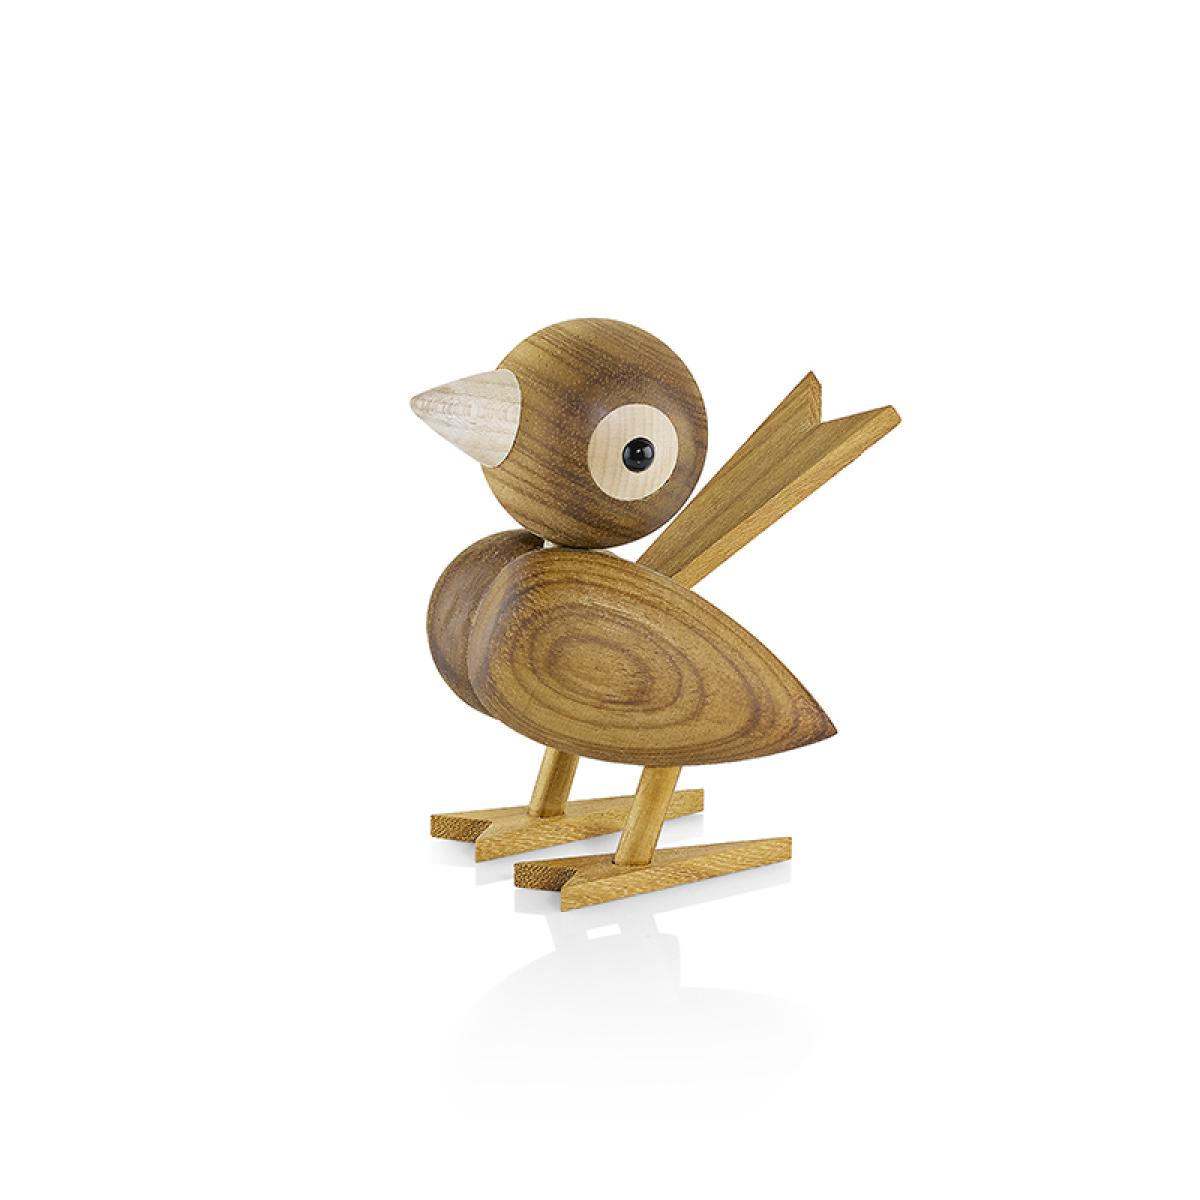 Gunnar Florning Sparrow bird for Lucie Kaas -3 sizes